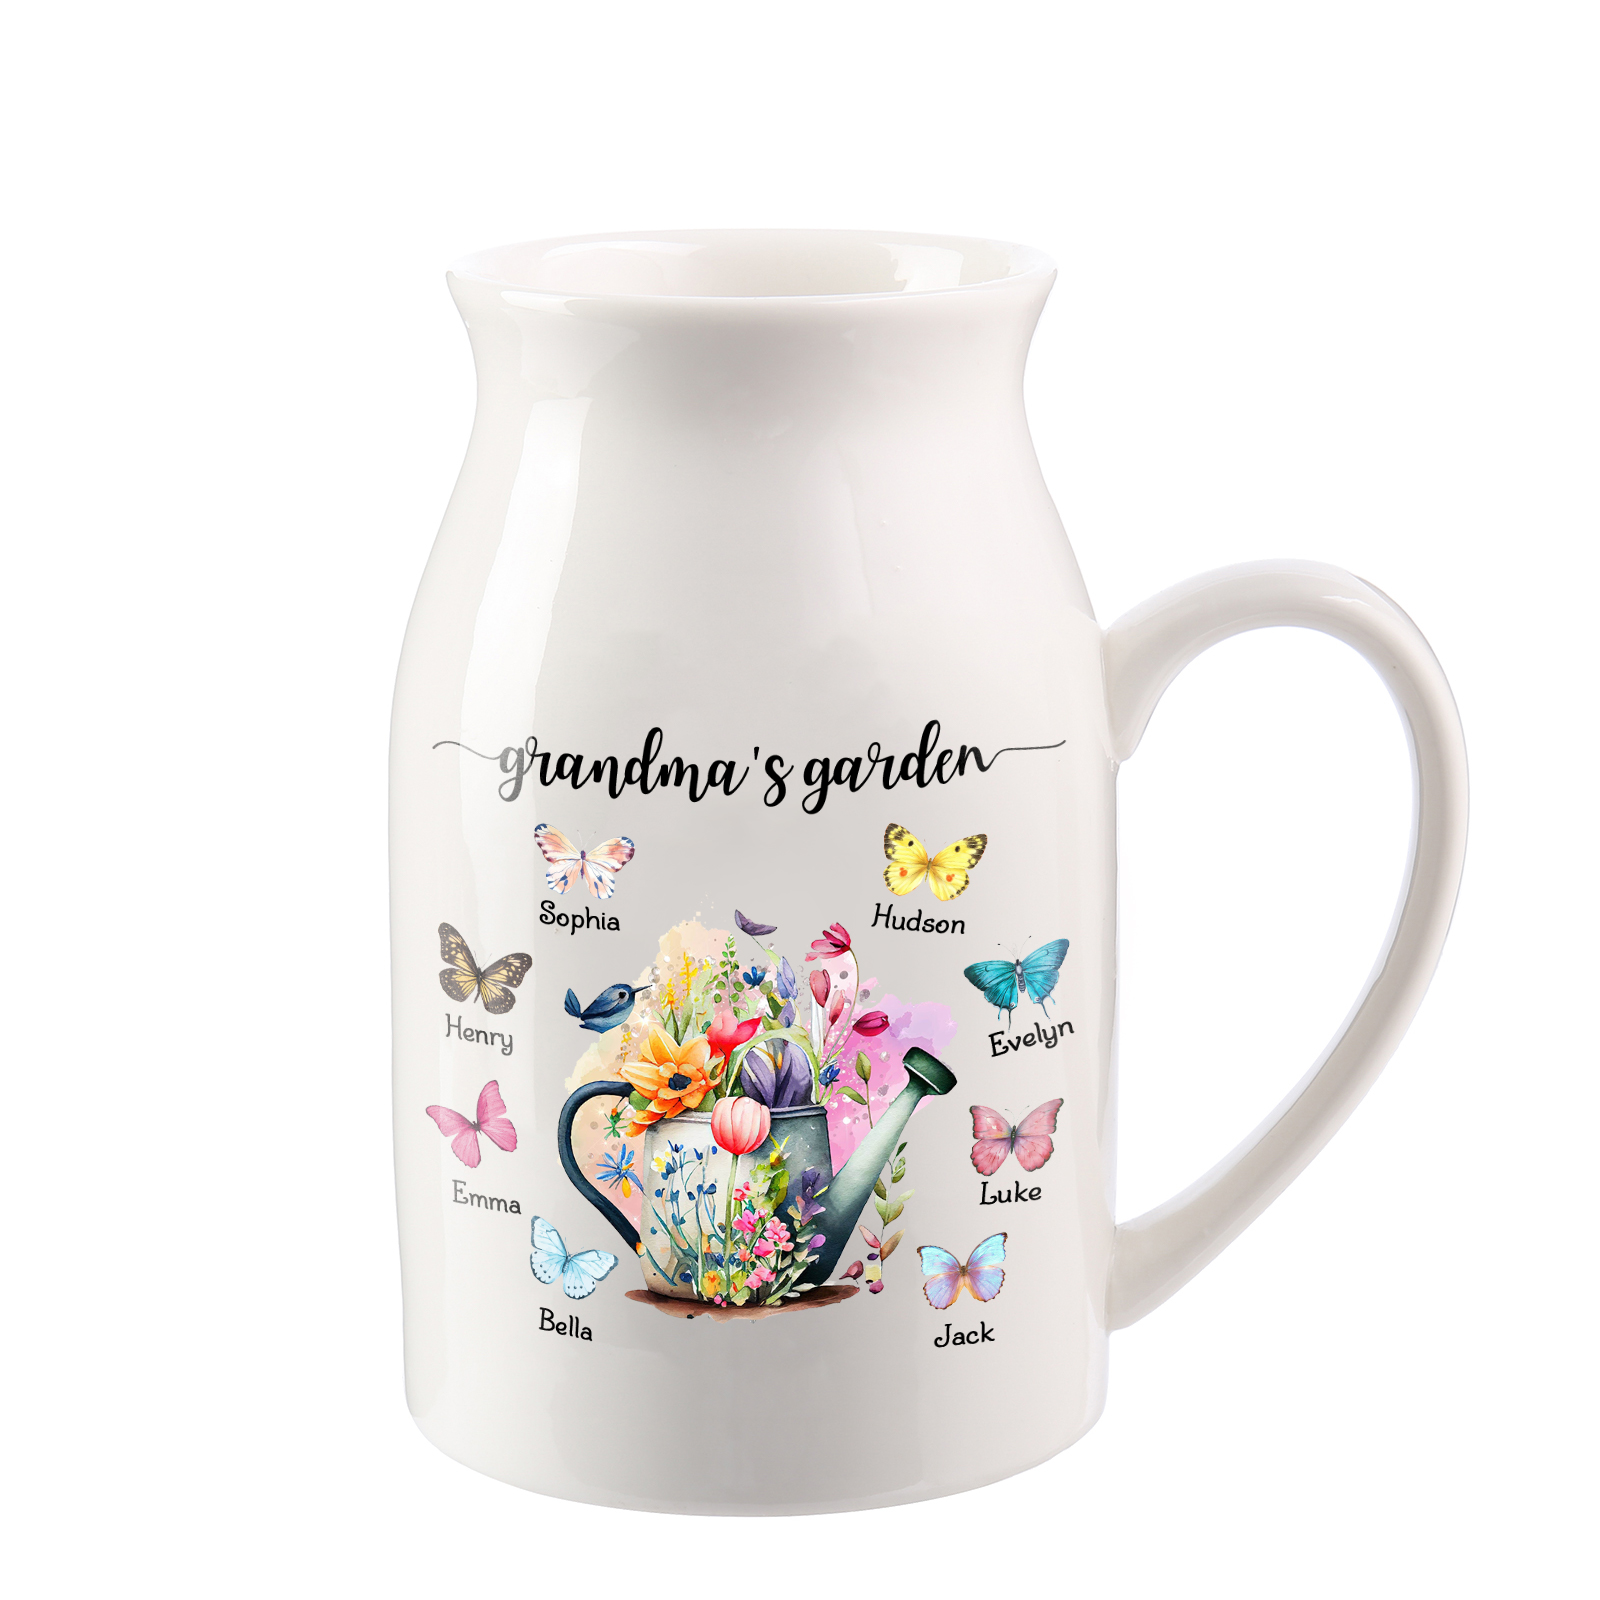 8 Names - Personalized Name "Grandma's Garden" Ceramic Vase as a Gift for Grandma